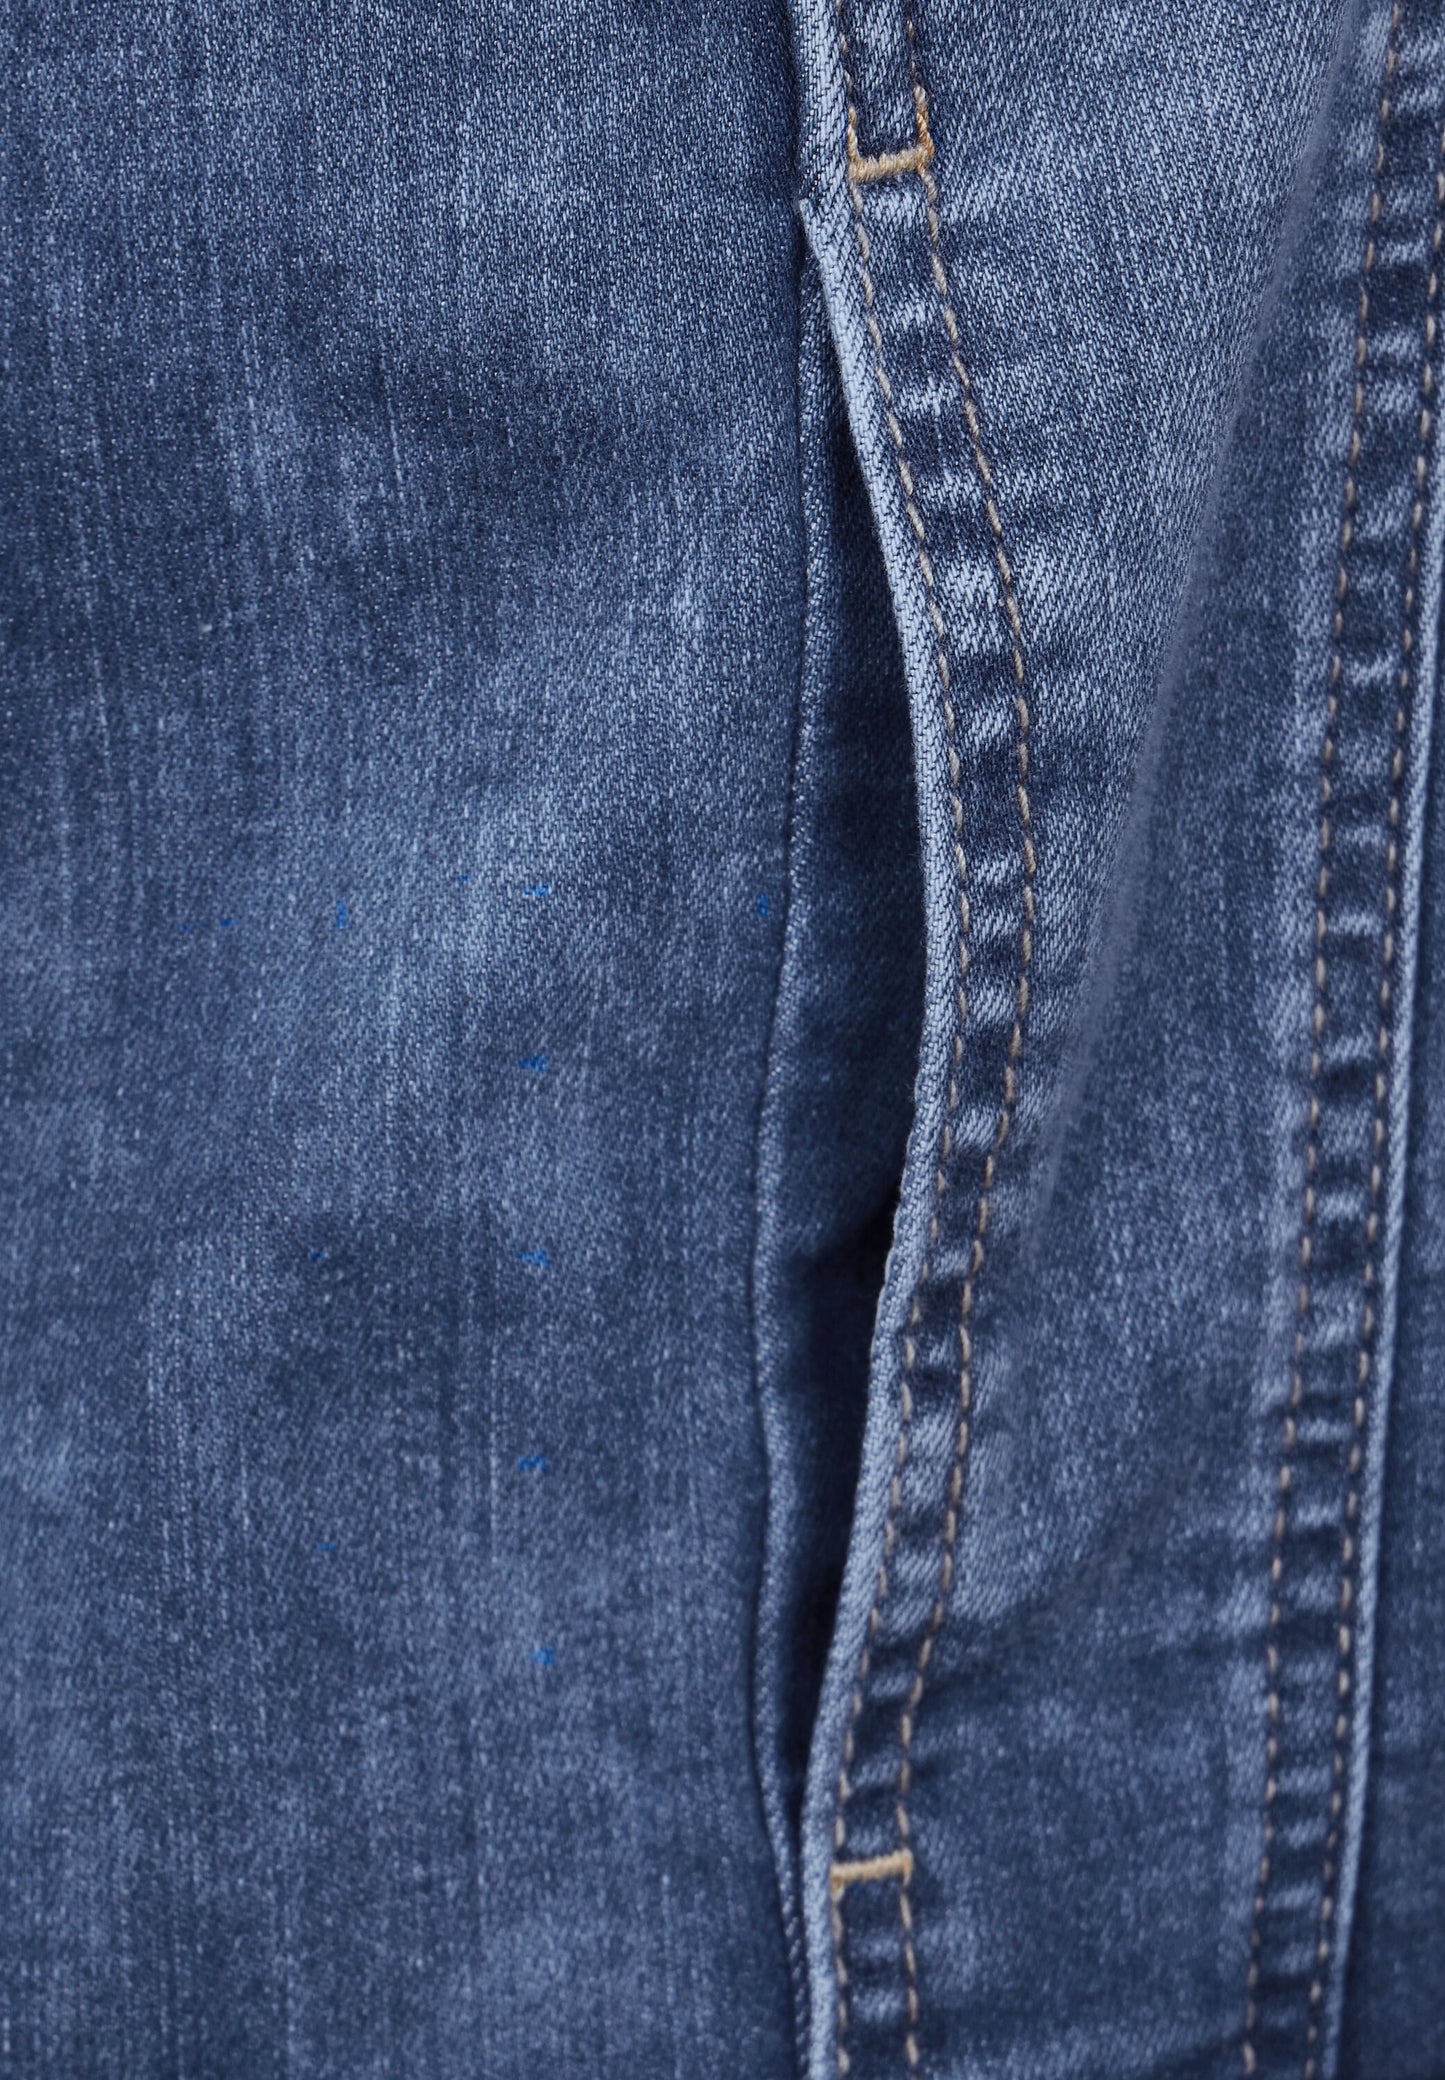 Geöffnete Tasche einer Jeansjacke